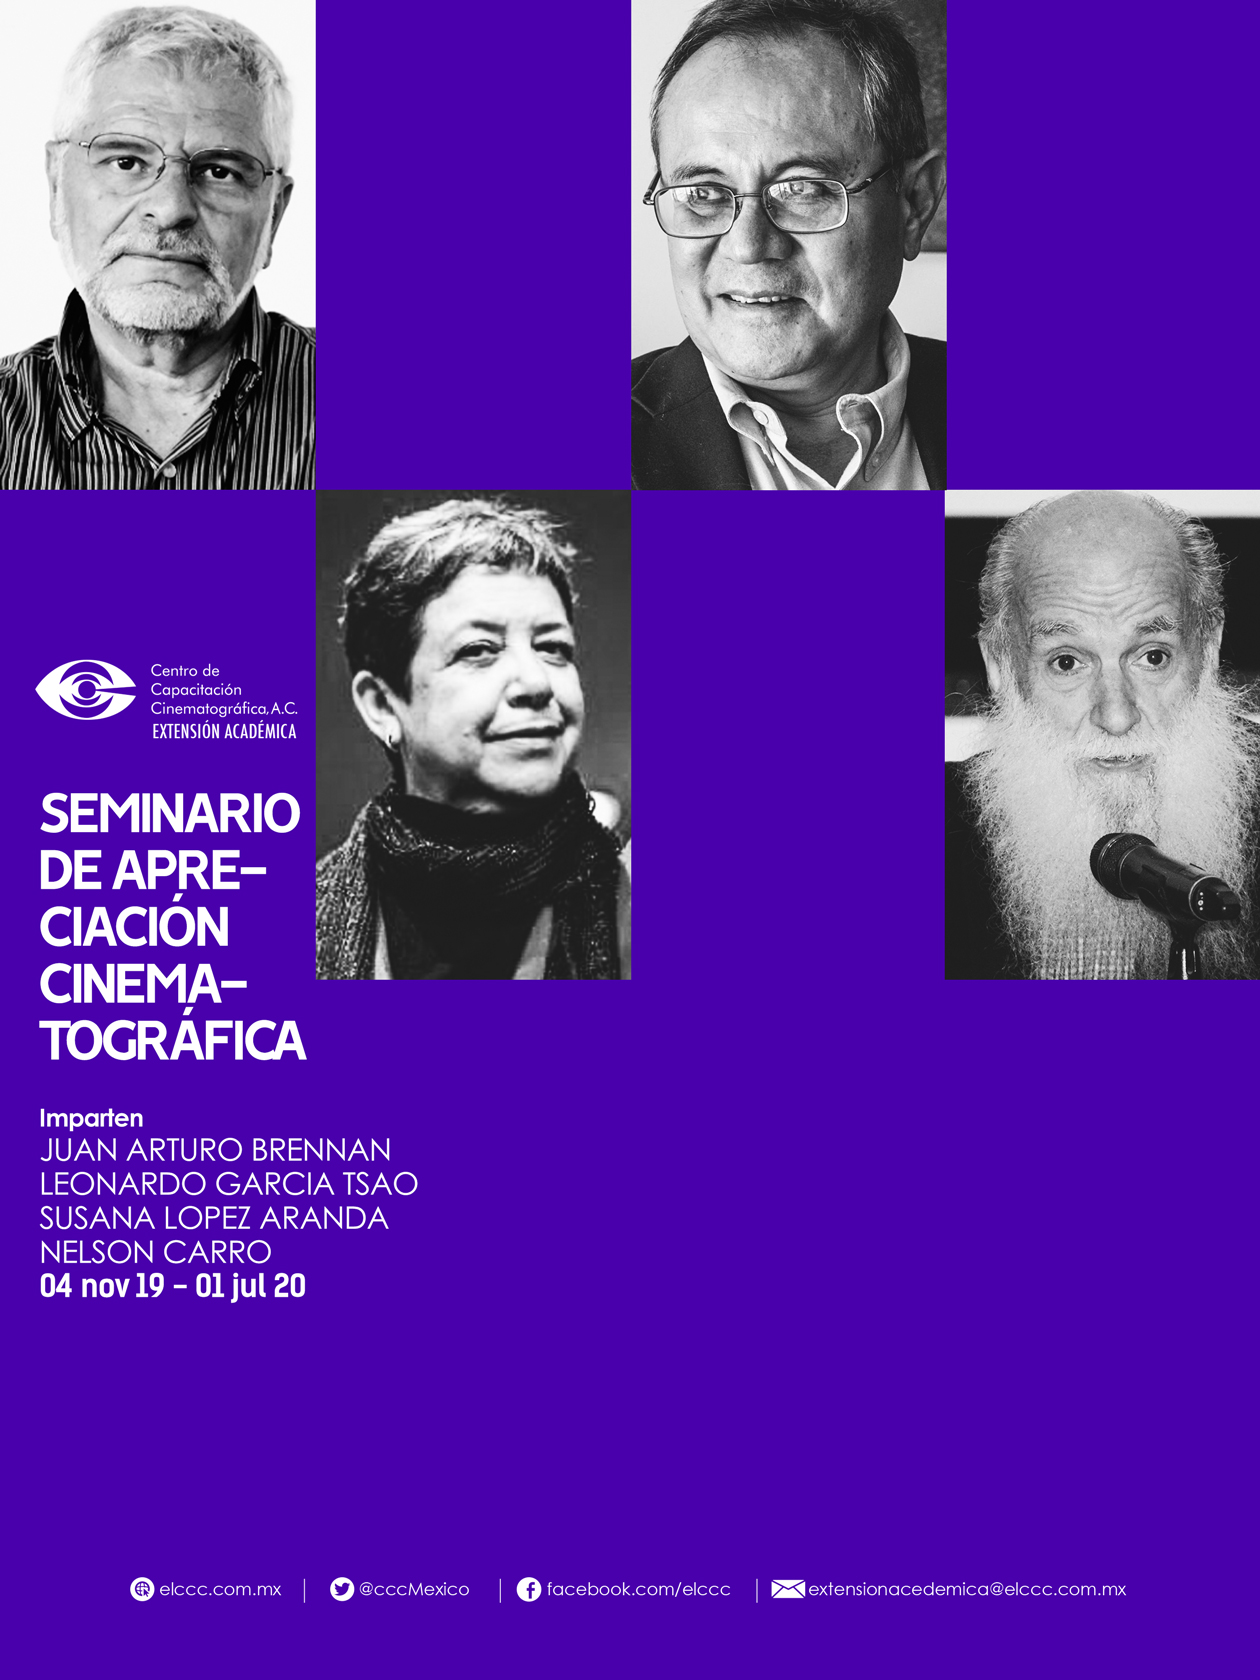 SEMINARIO DE APRECIACIÓN CINEMATOGRÁFICA2019